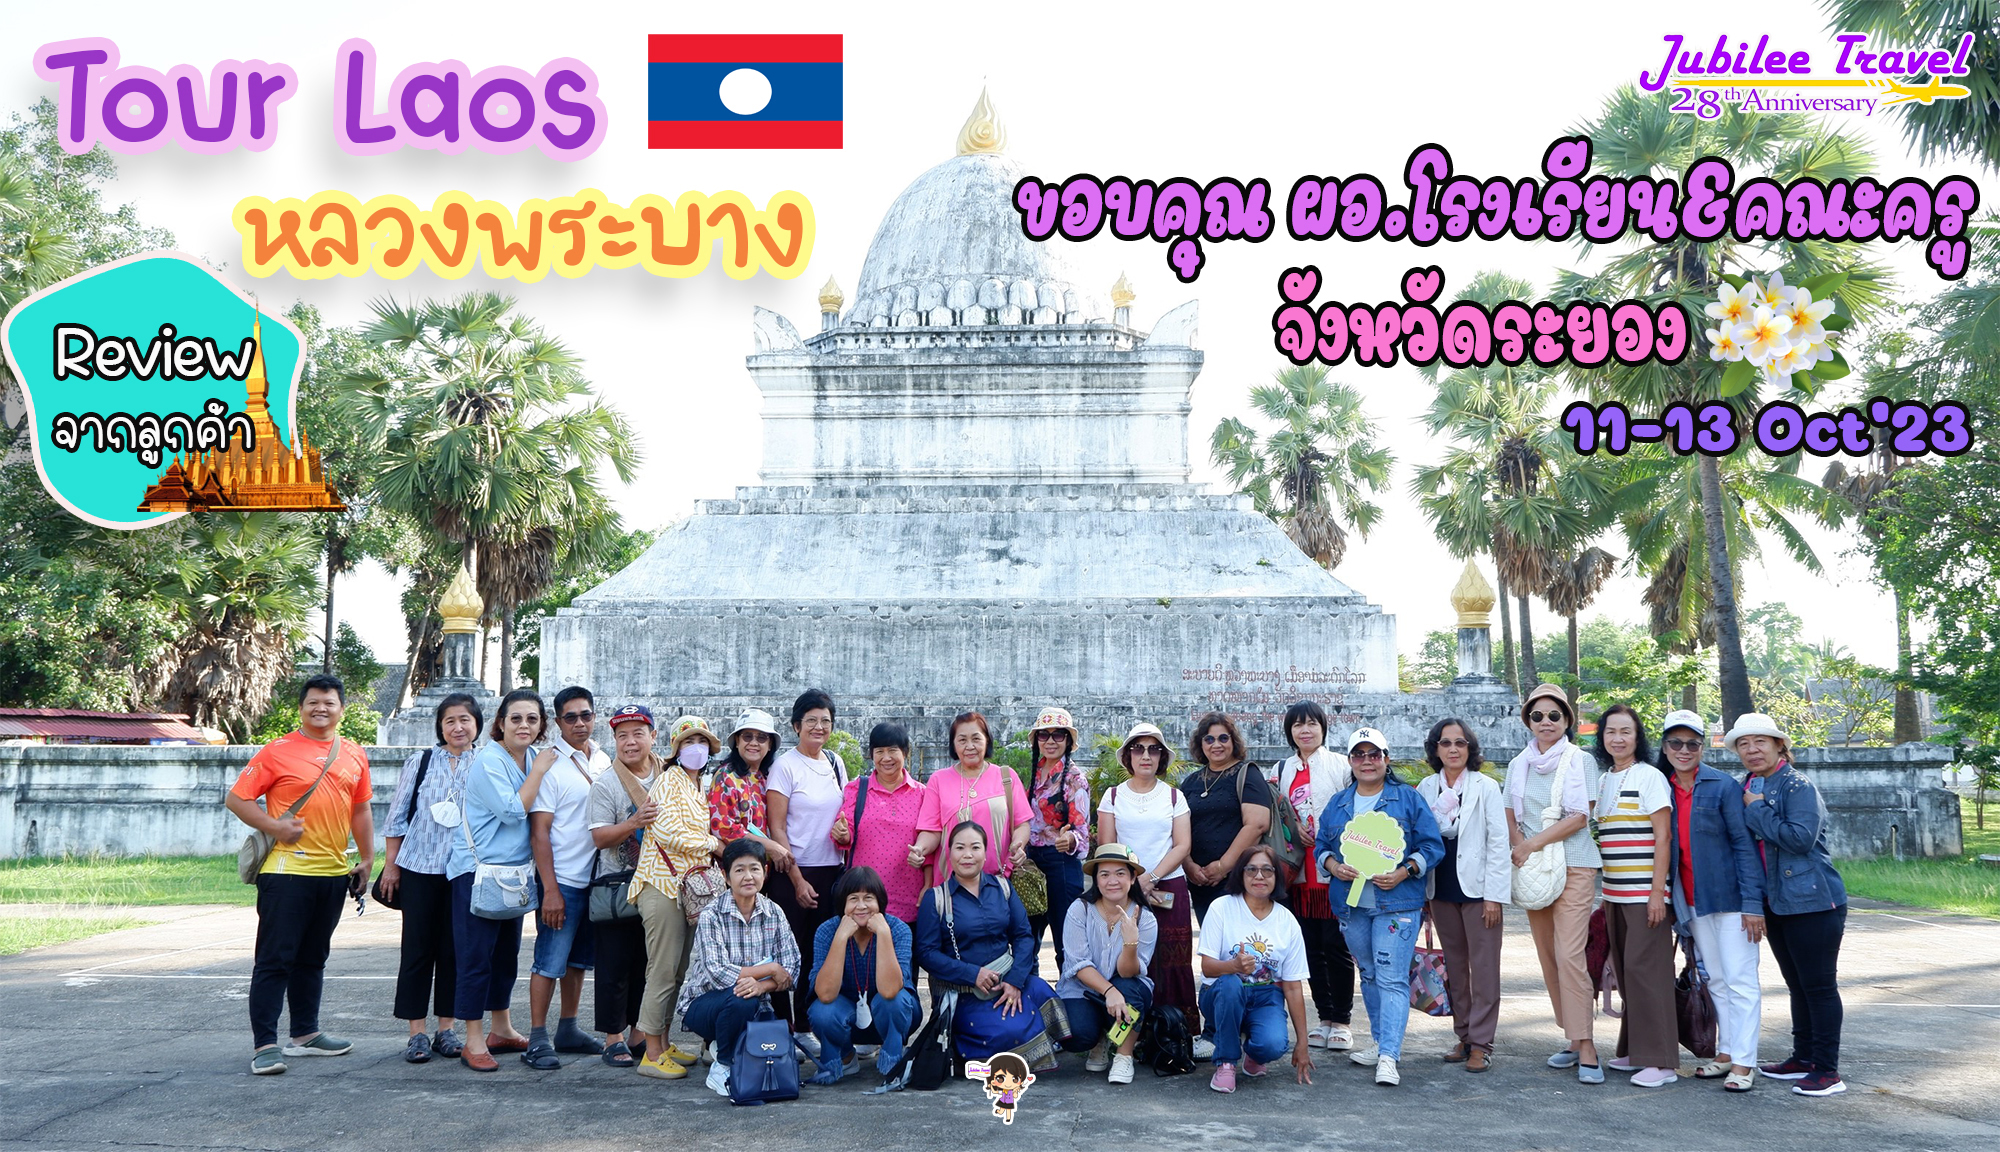 รีวิวจากคุณลูกค้า Group ผอ.โรงเรียน&คณะครูจังหวัดระยอง Tour Laos หลวงพระบาง11-13 Oct’23